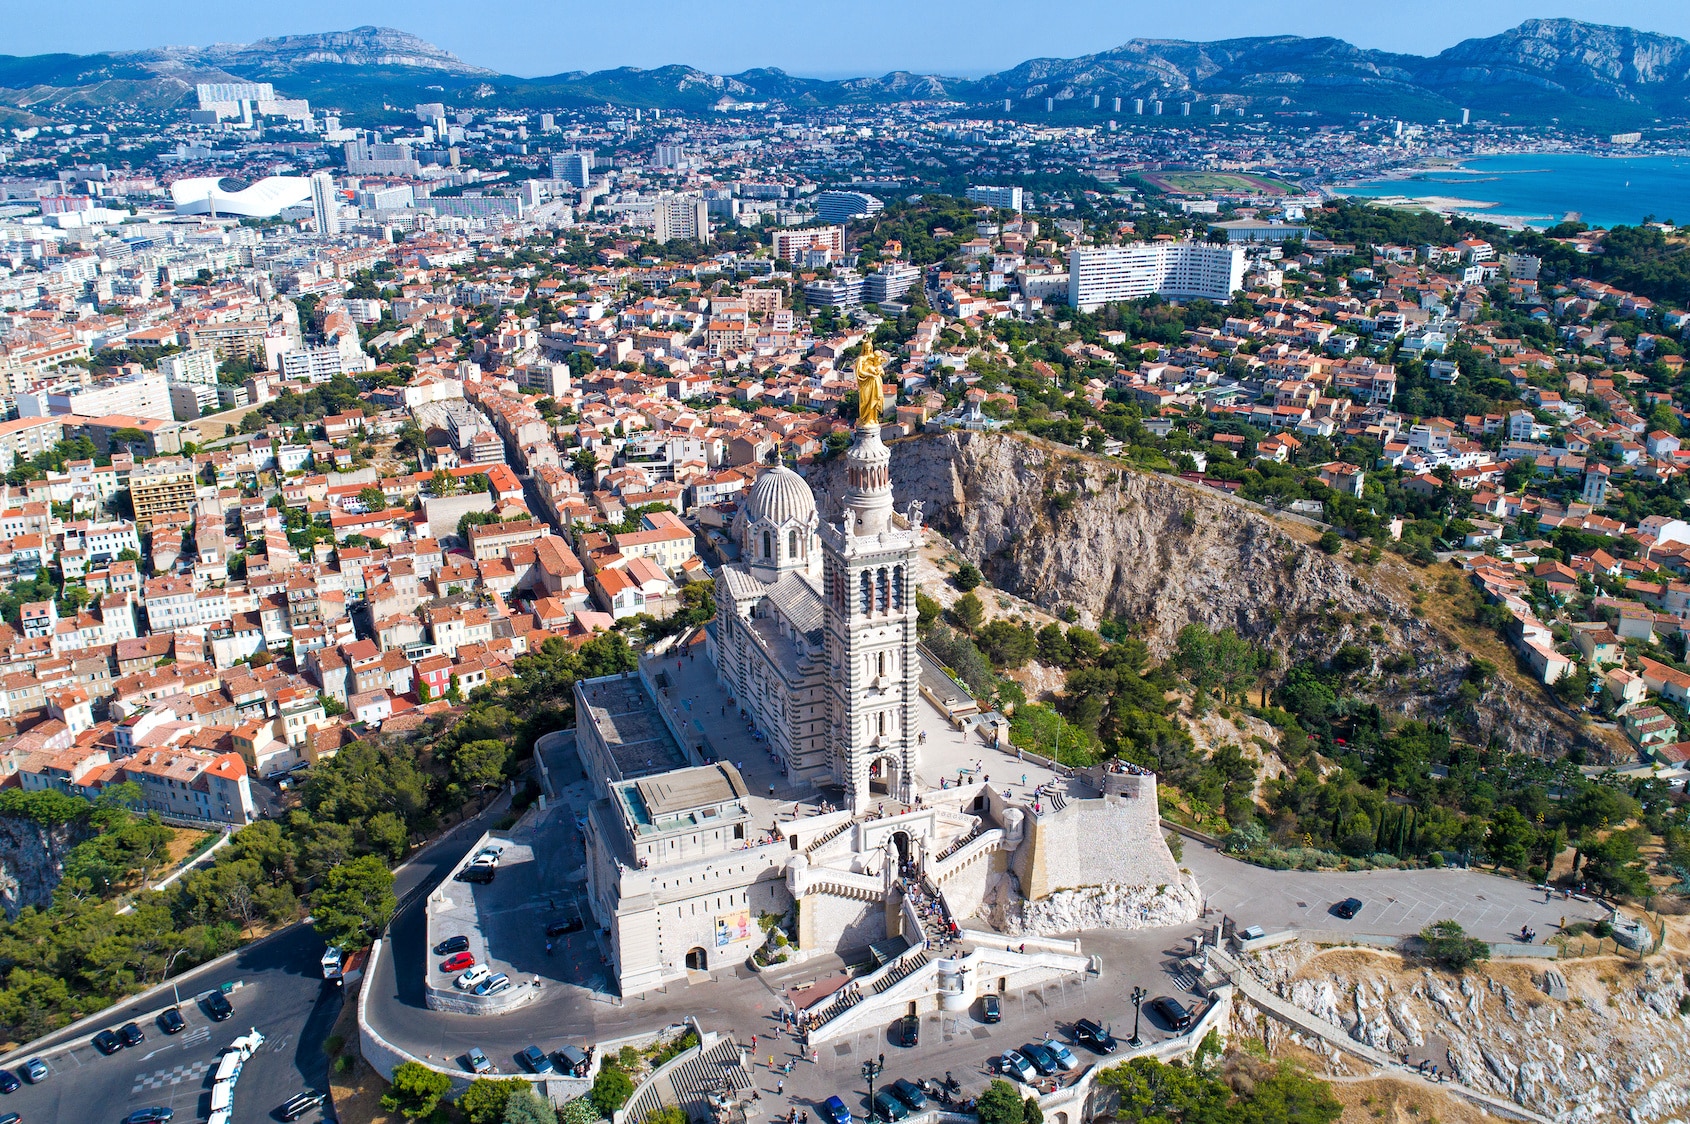 carbone, Marseille veut lever localement 10 millions d’euros pour atteindre la neutralité carbone en 2030, Made in Marseille